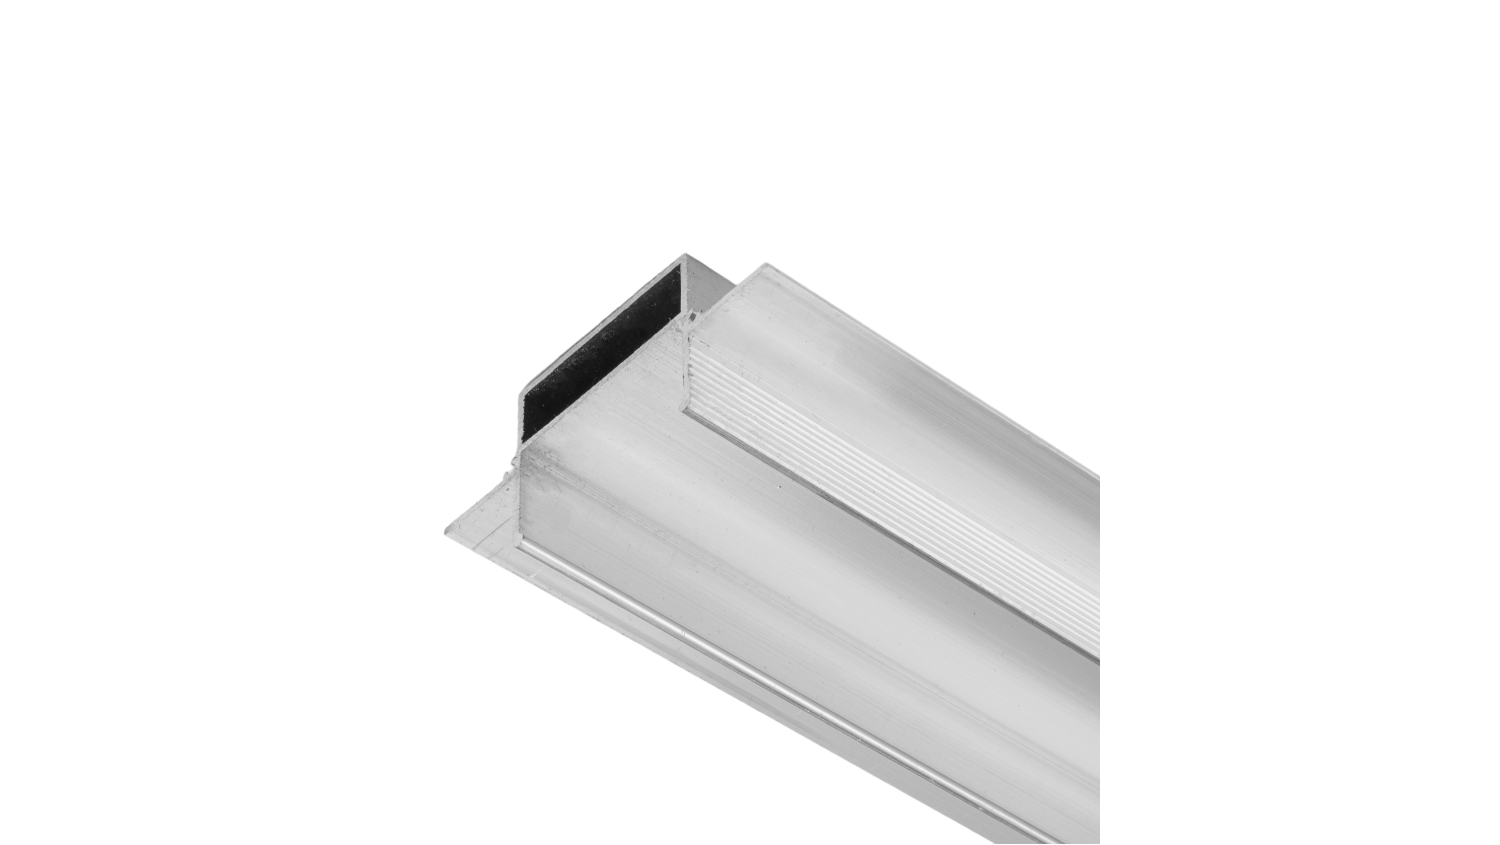 Профиль LED в гипсокартон PG-TR2-35